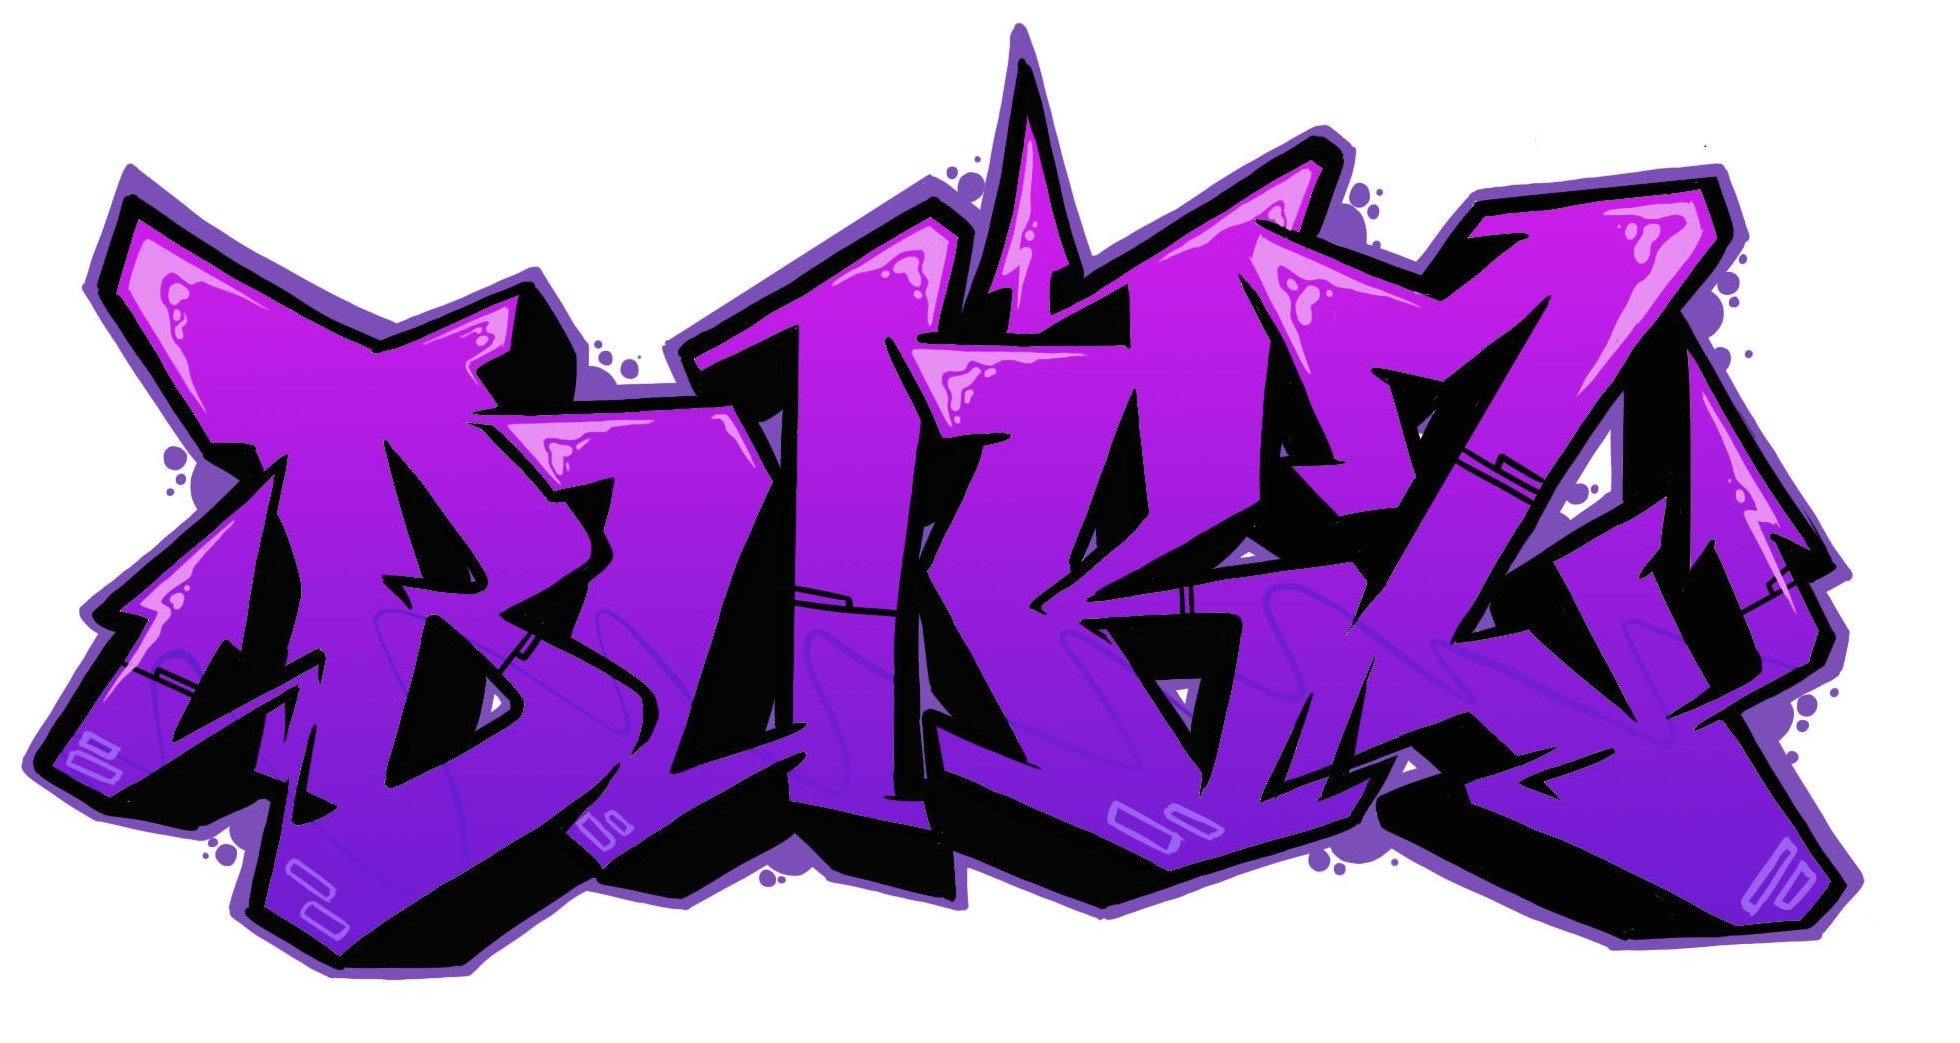 graffiti art words